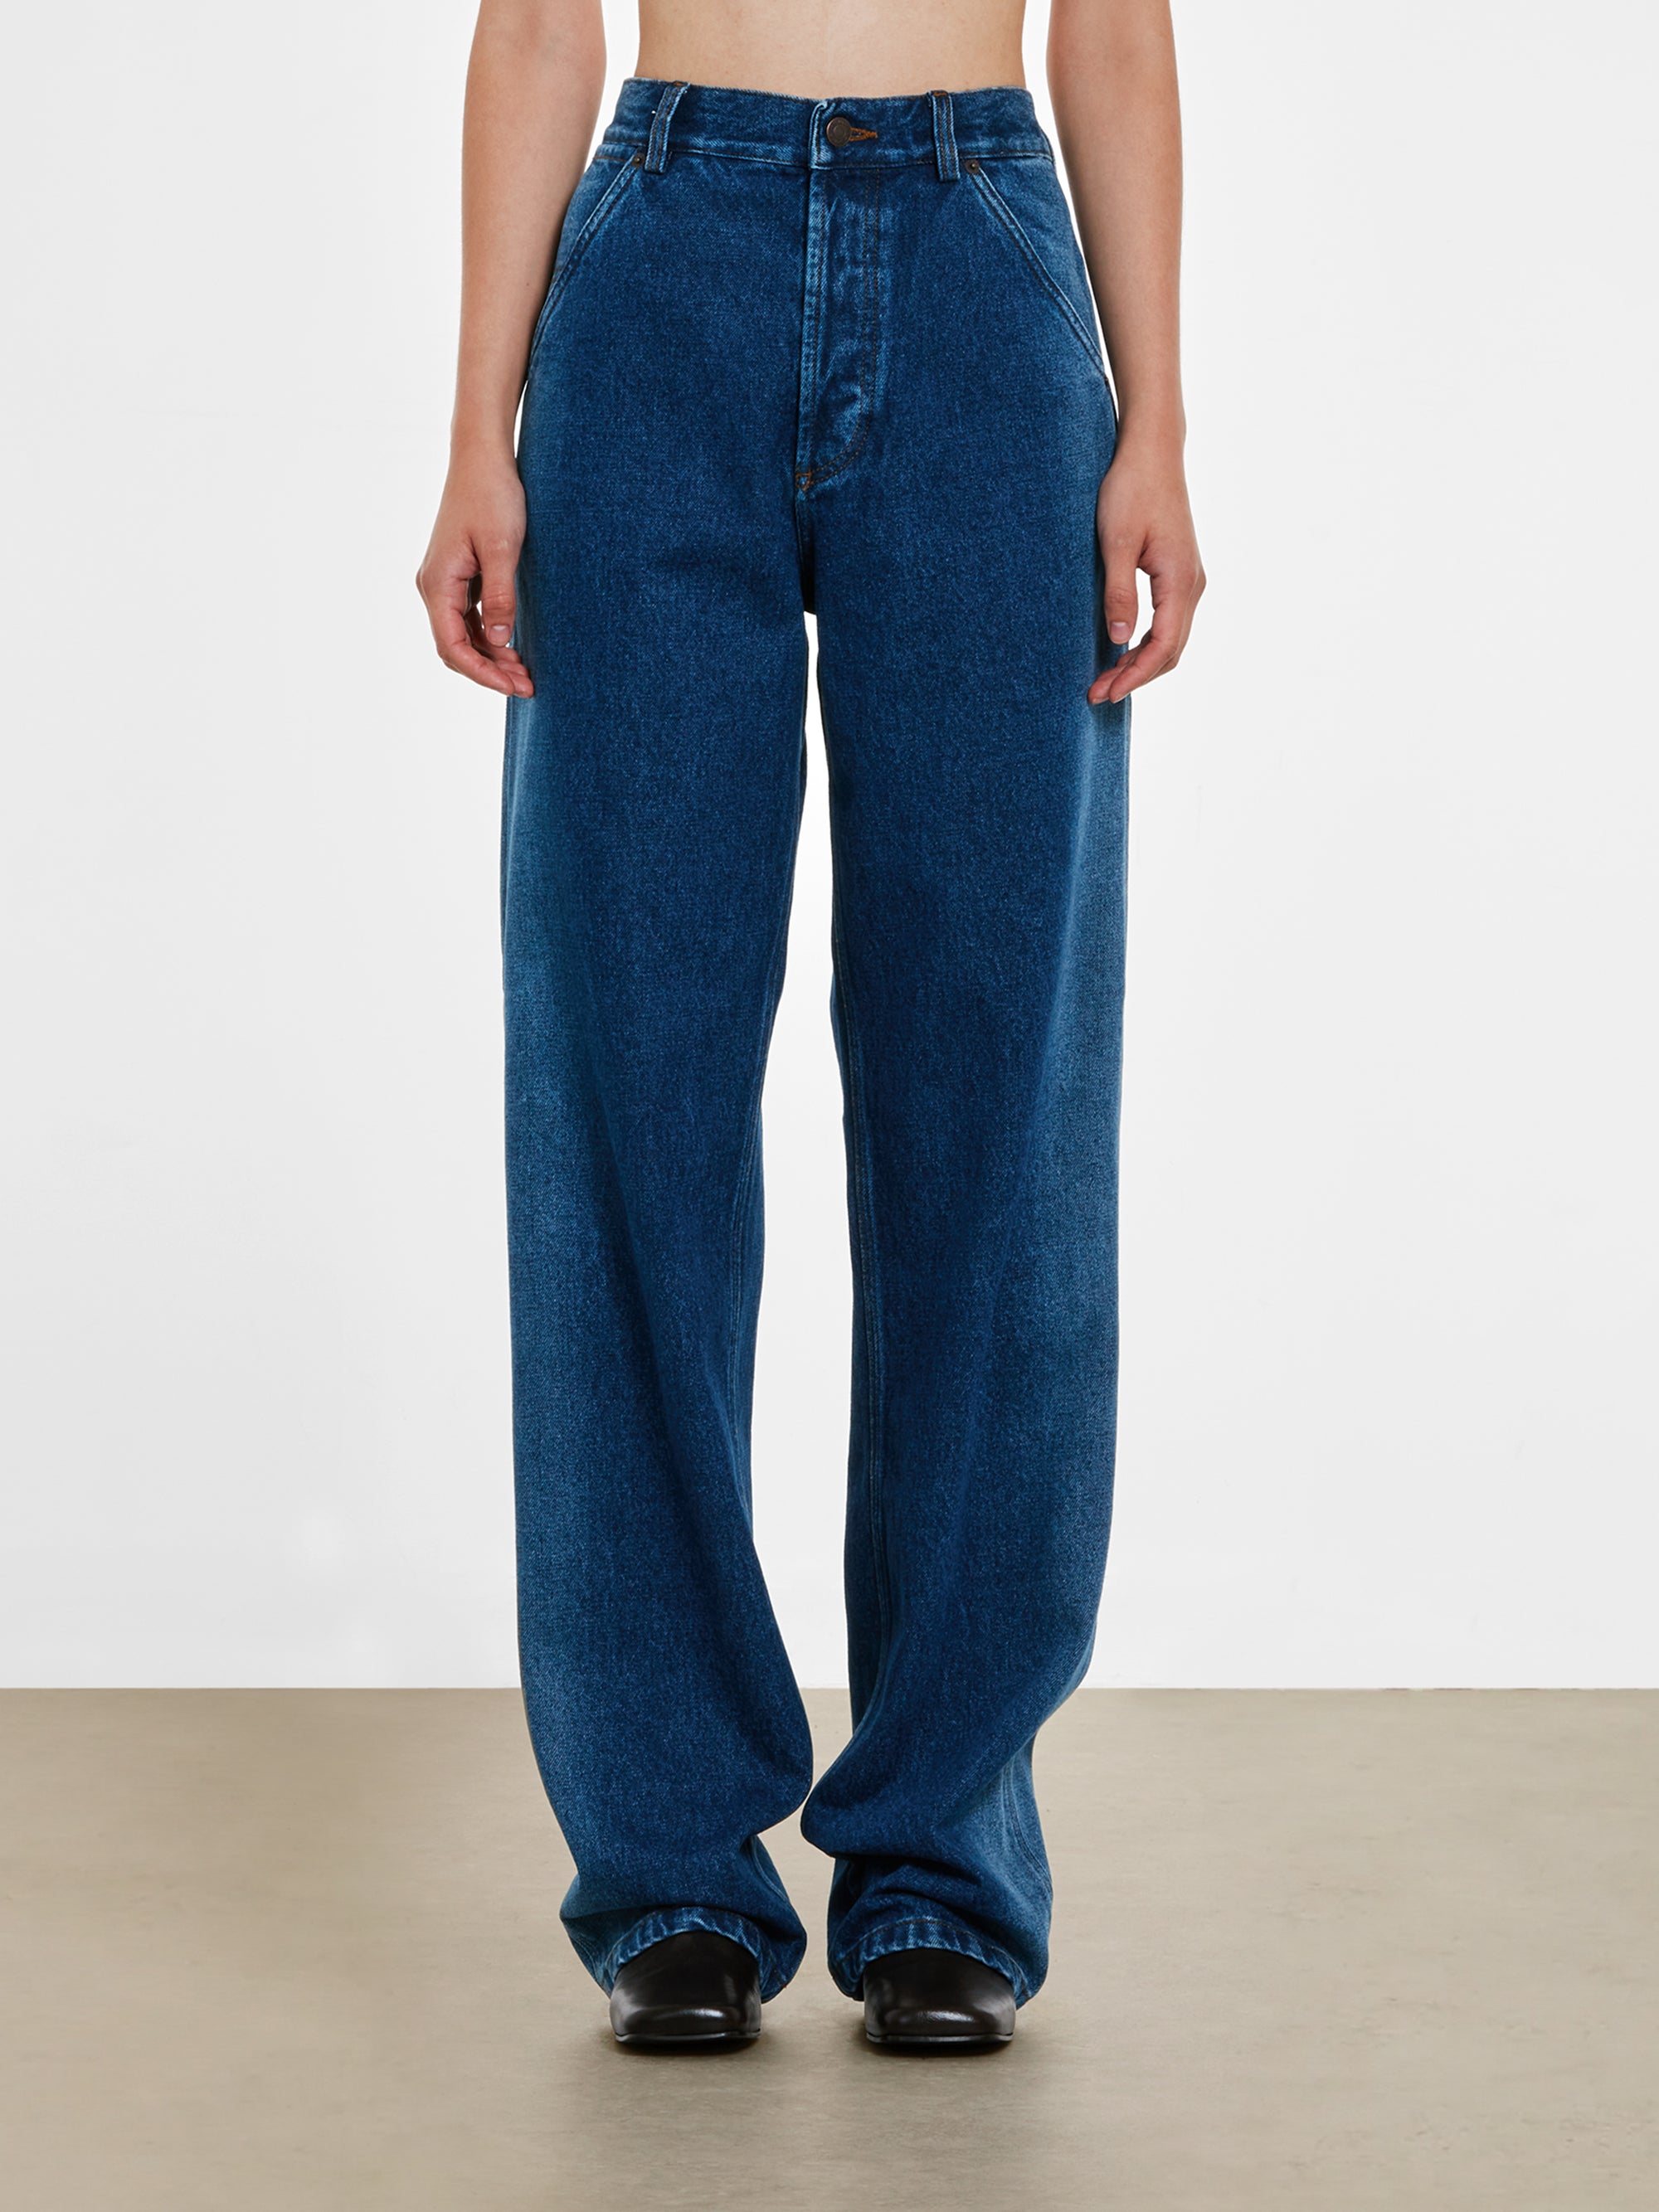 Dries Van Noten - Women’s Indigo Faded Jeans - (Indigo) view 2